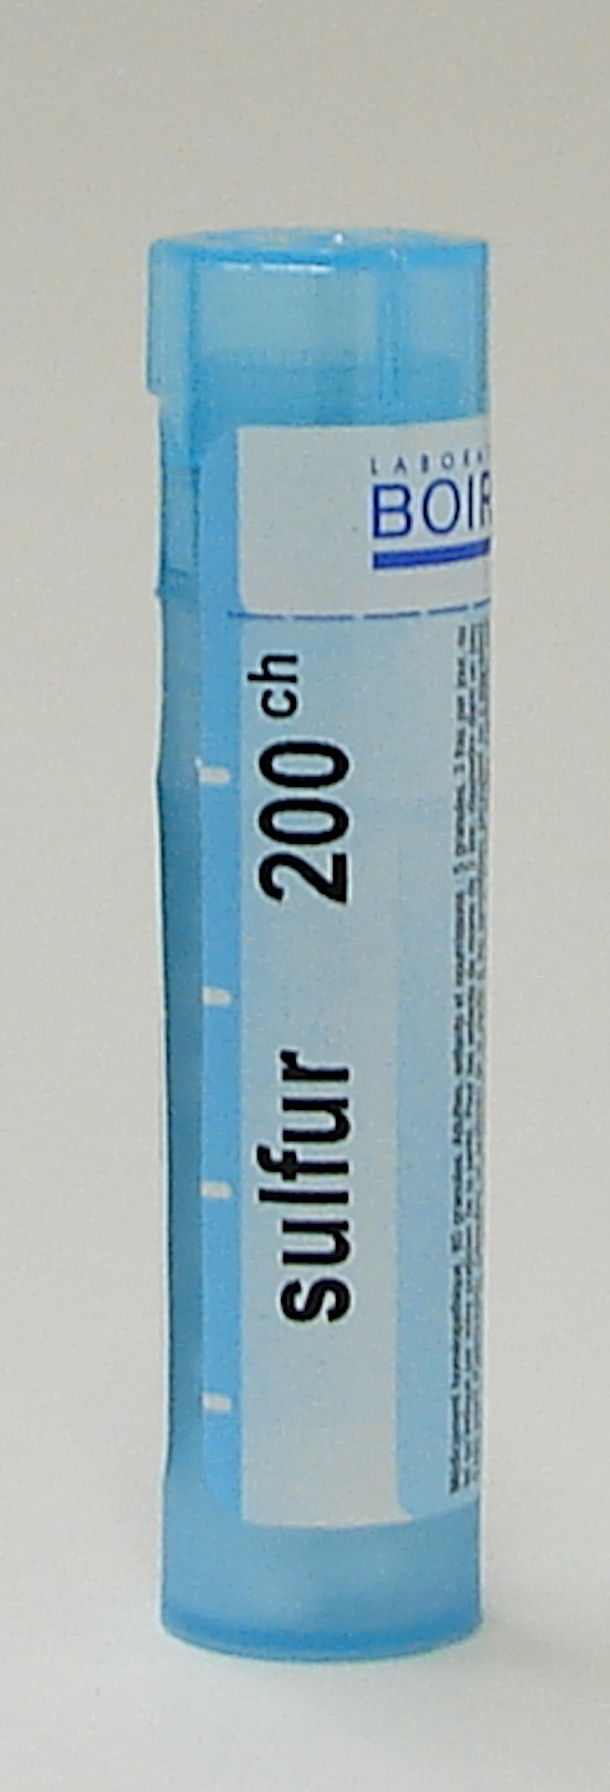 Sulfur, 200ch sublingual pellets (Boiron)